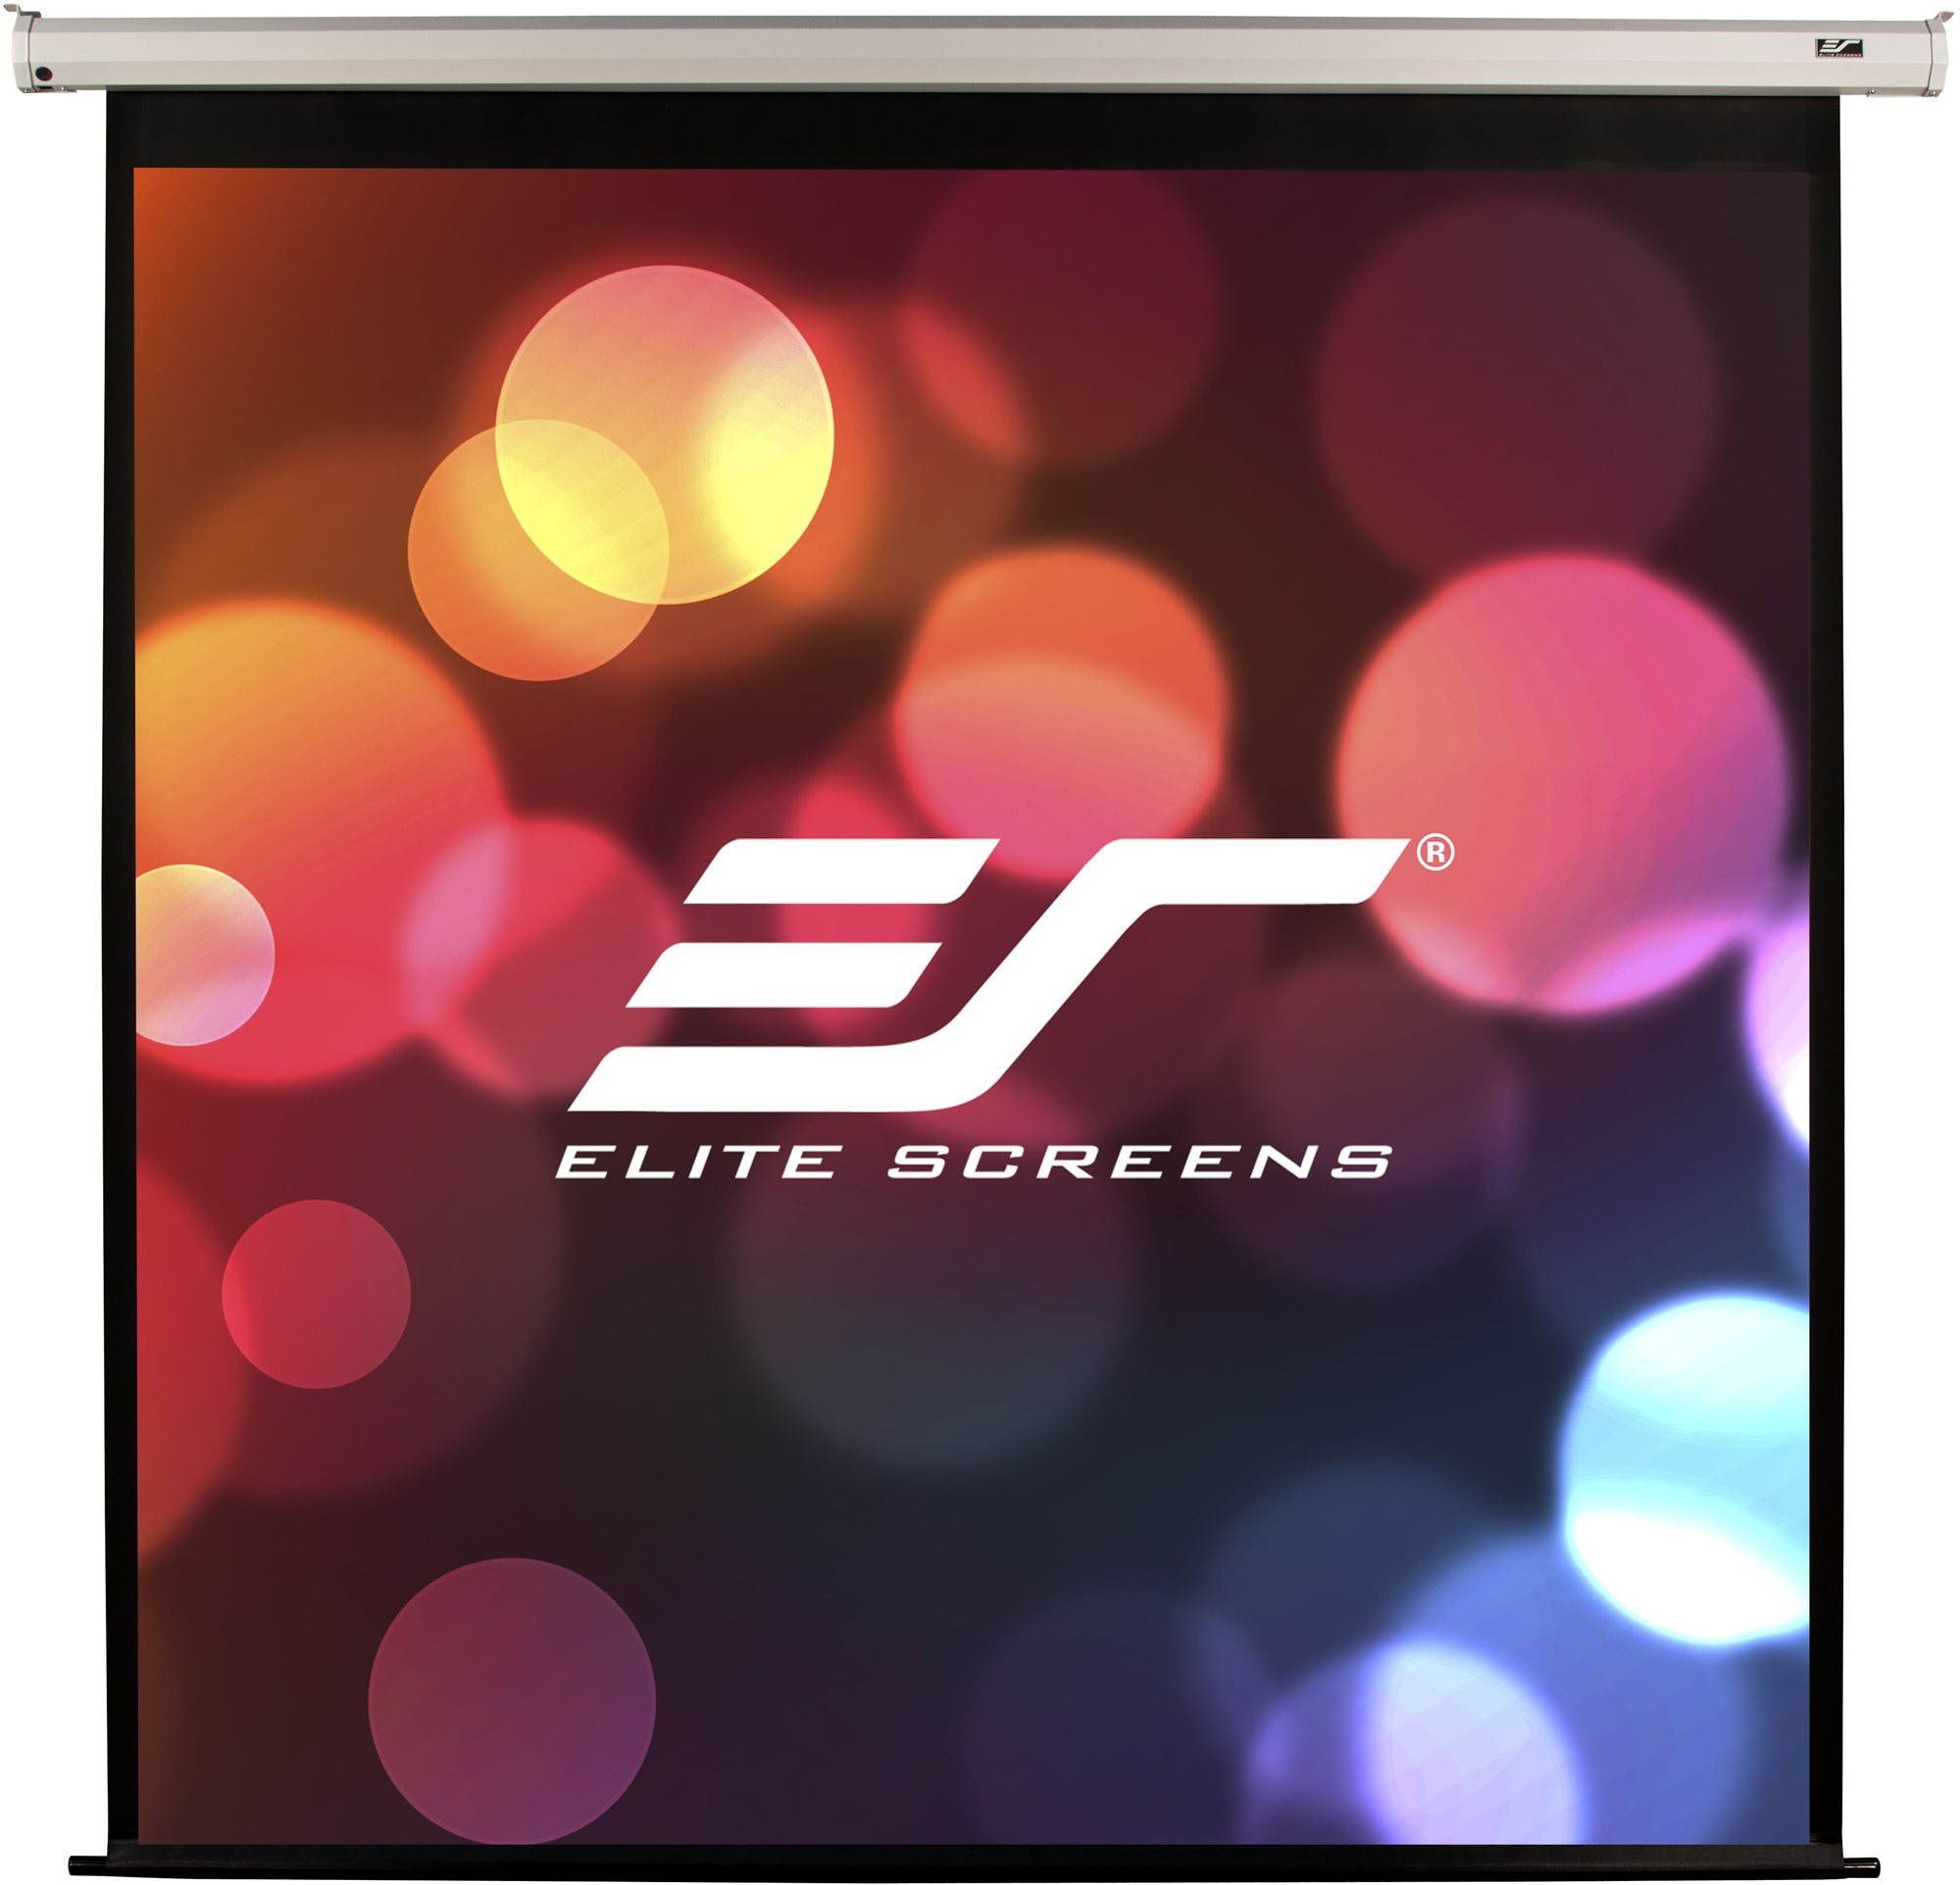 Elite screens vetítővászon elektromos motorral 106" (16:9)